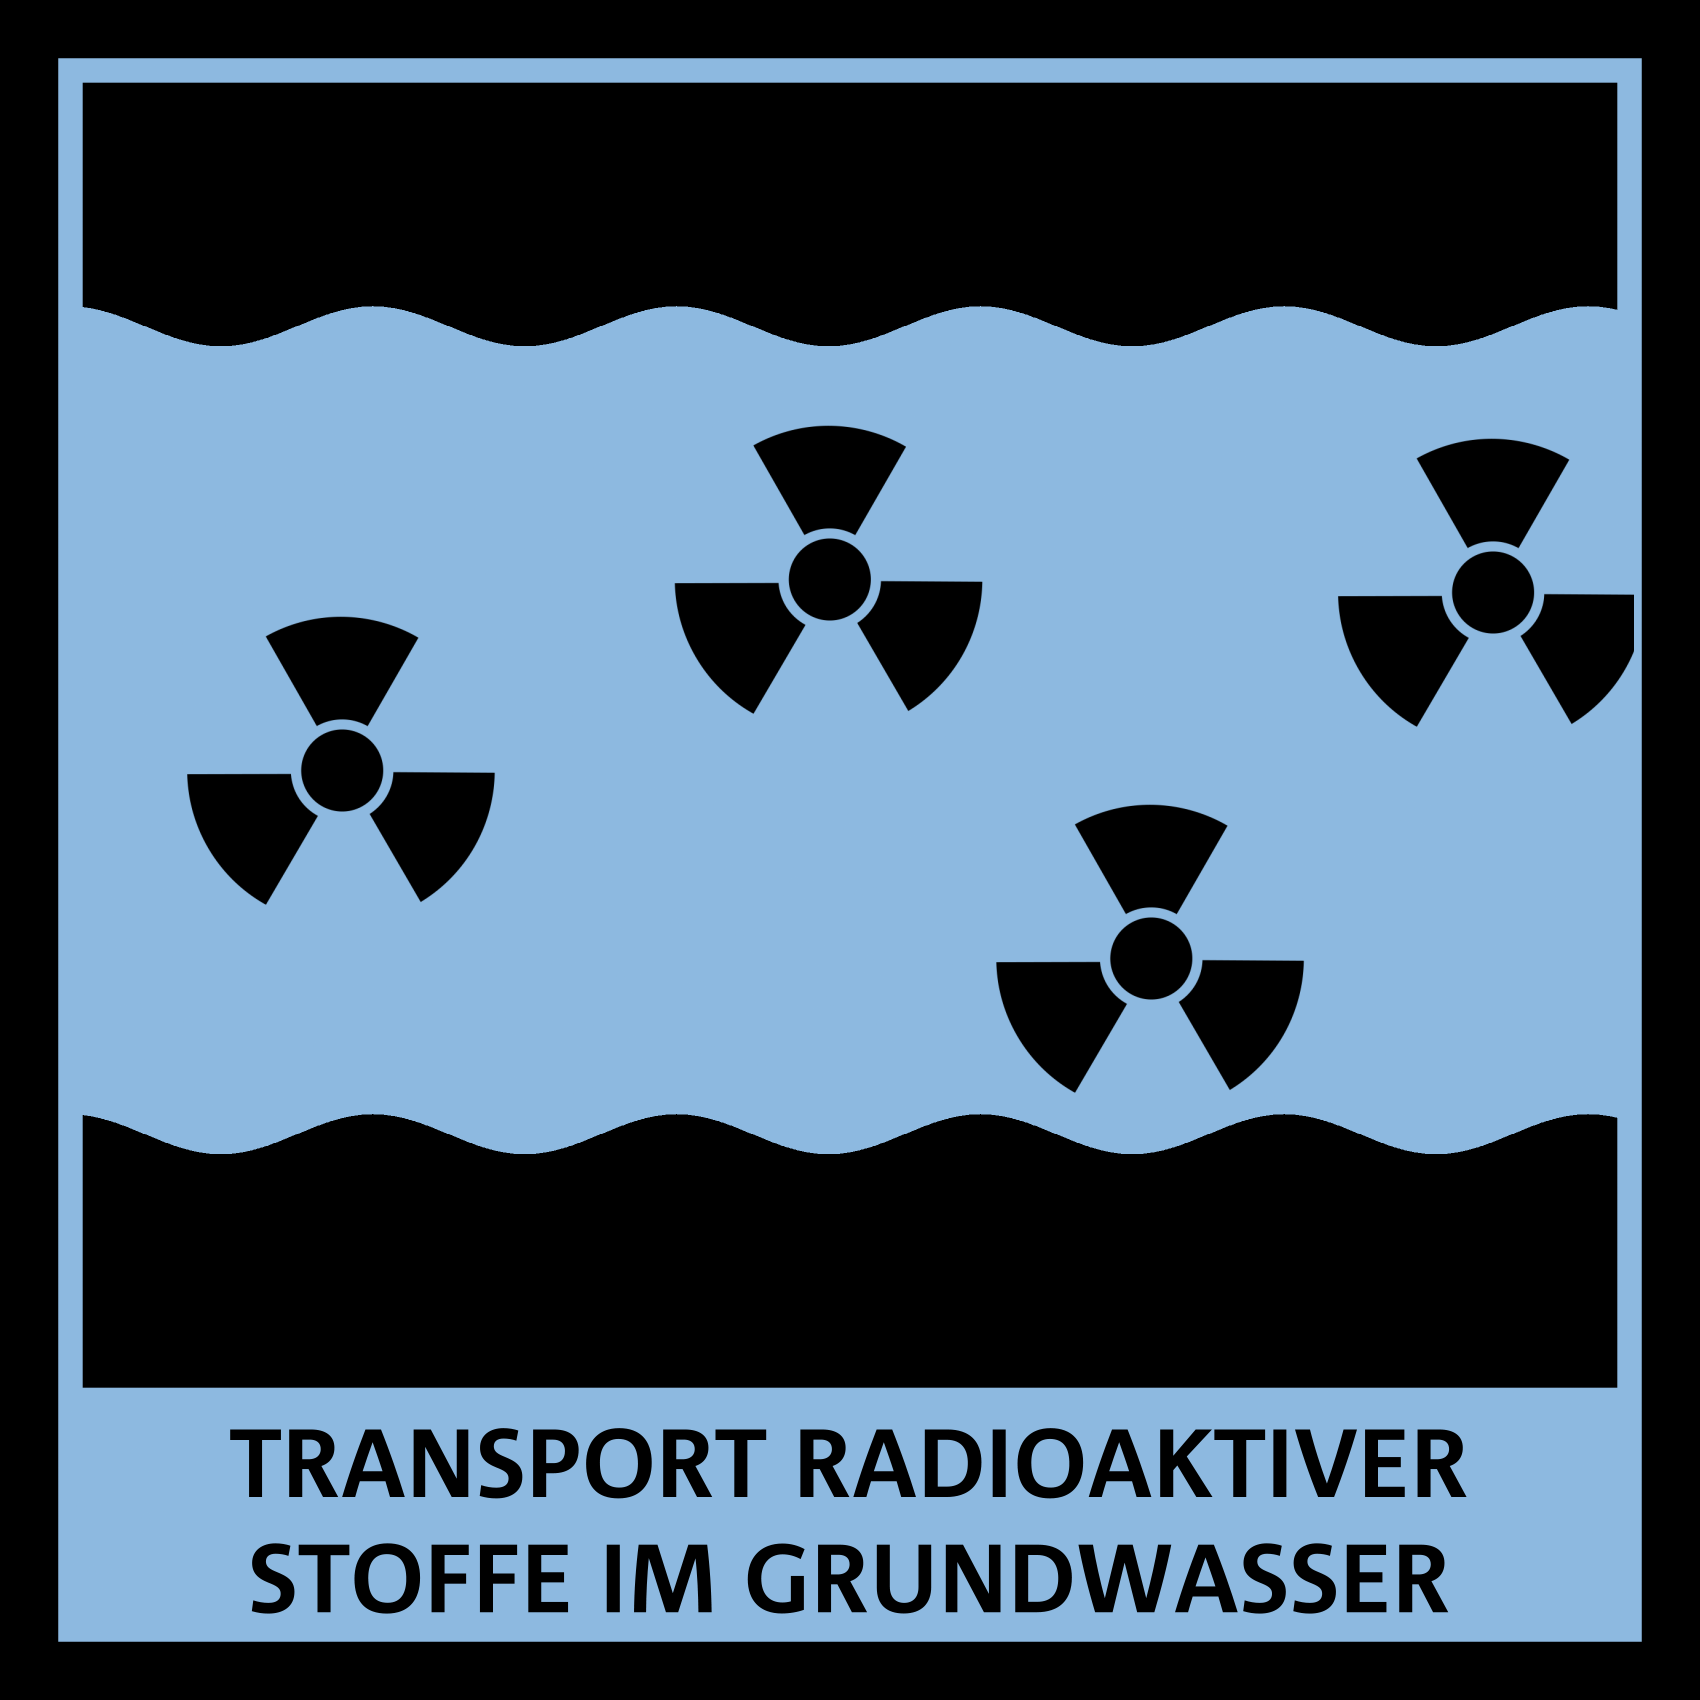 Grafik: Wellen symbolisieren Wasser, darauf das Zeichen für Radioaktivität